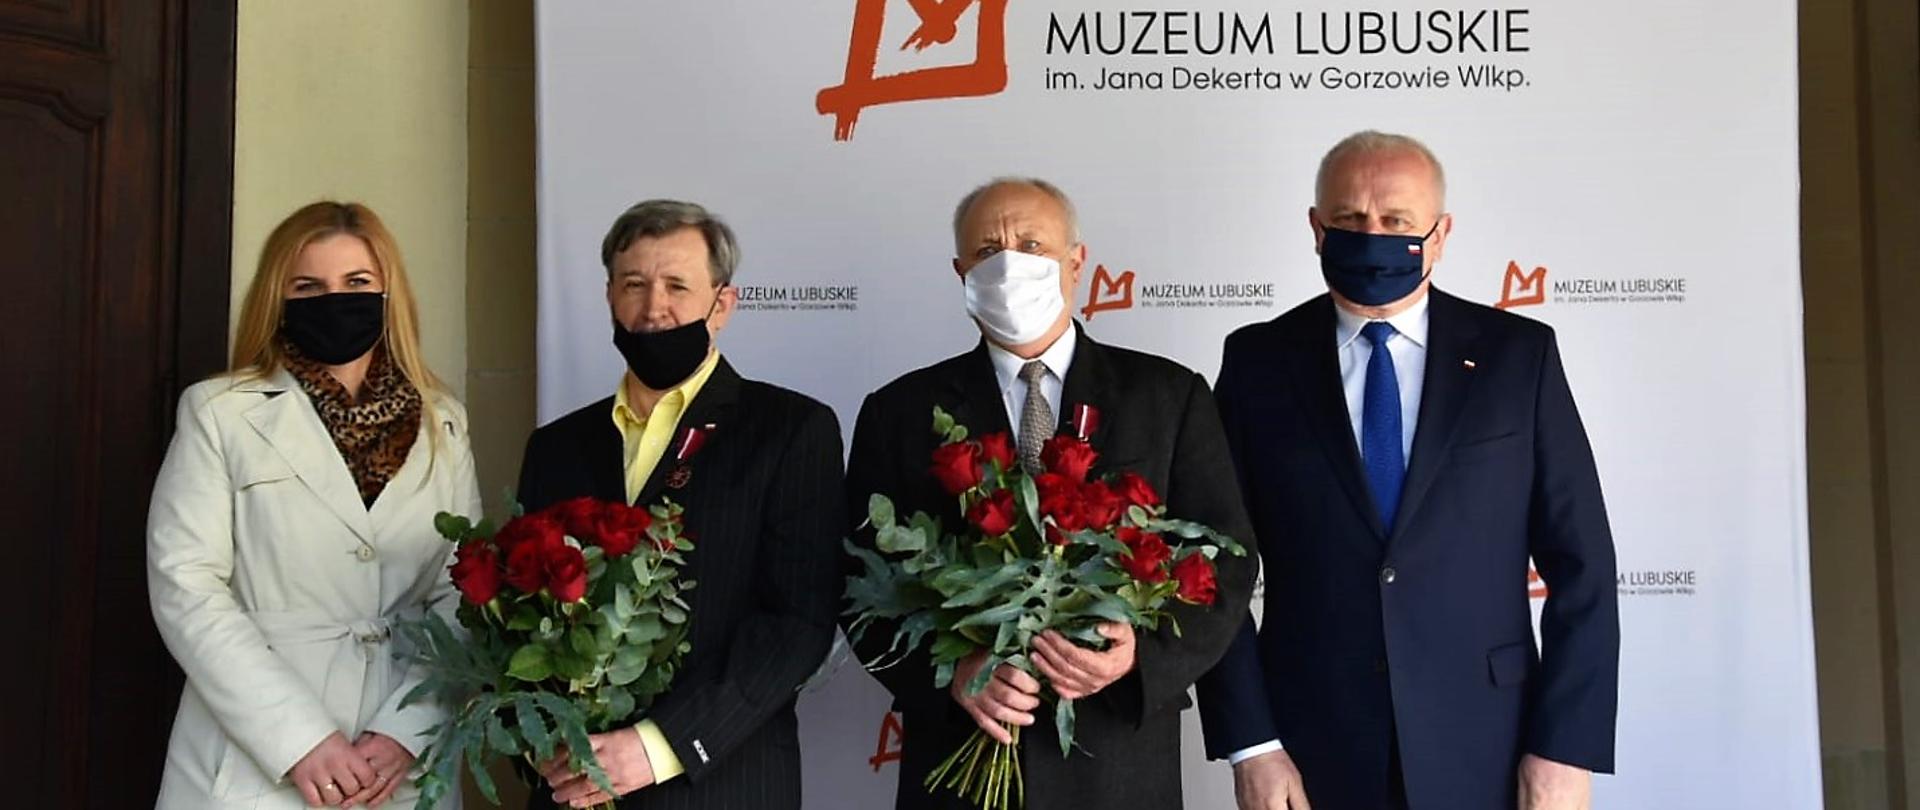 Zdjęcie grupowe, uhonorowani pracownicy Muzeum Lubuskiego wraz z wojewodą oraz dyrektorem Muzeum. W tle ścianka Muzeum Lubuskiego.